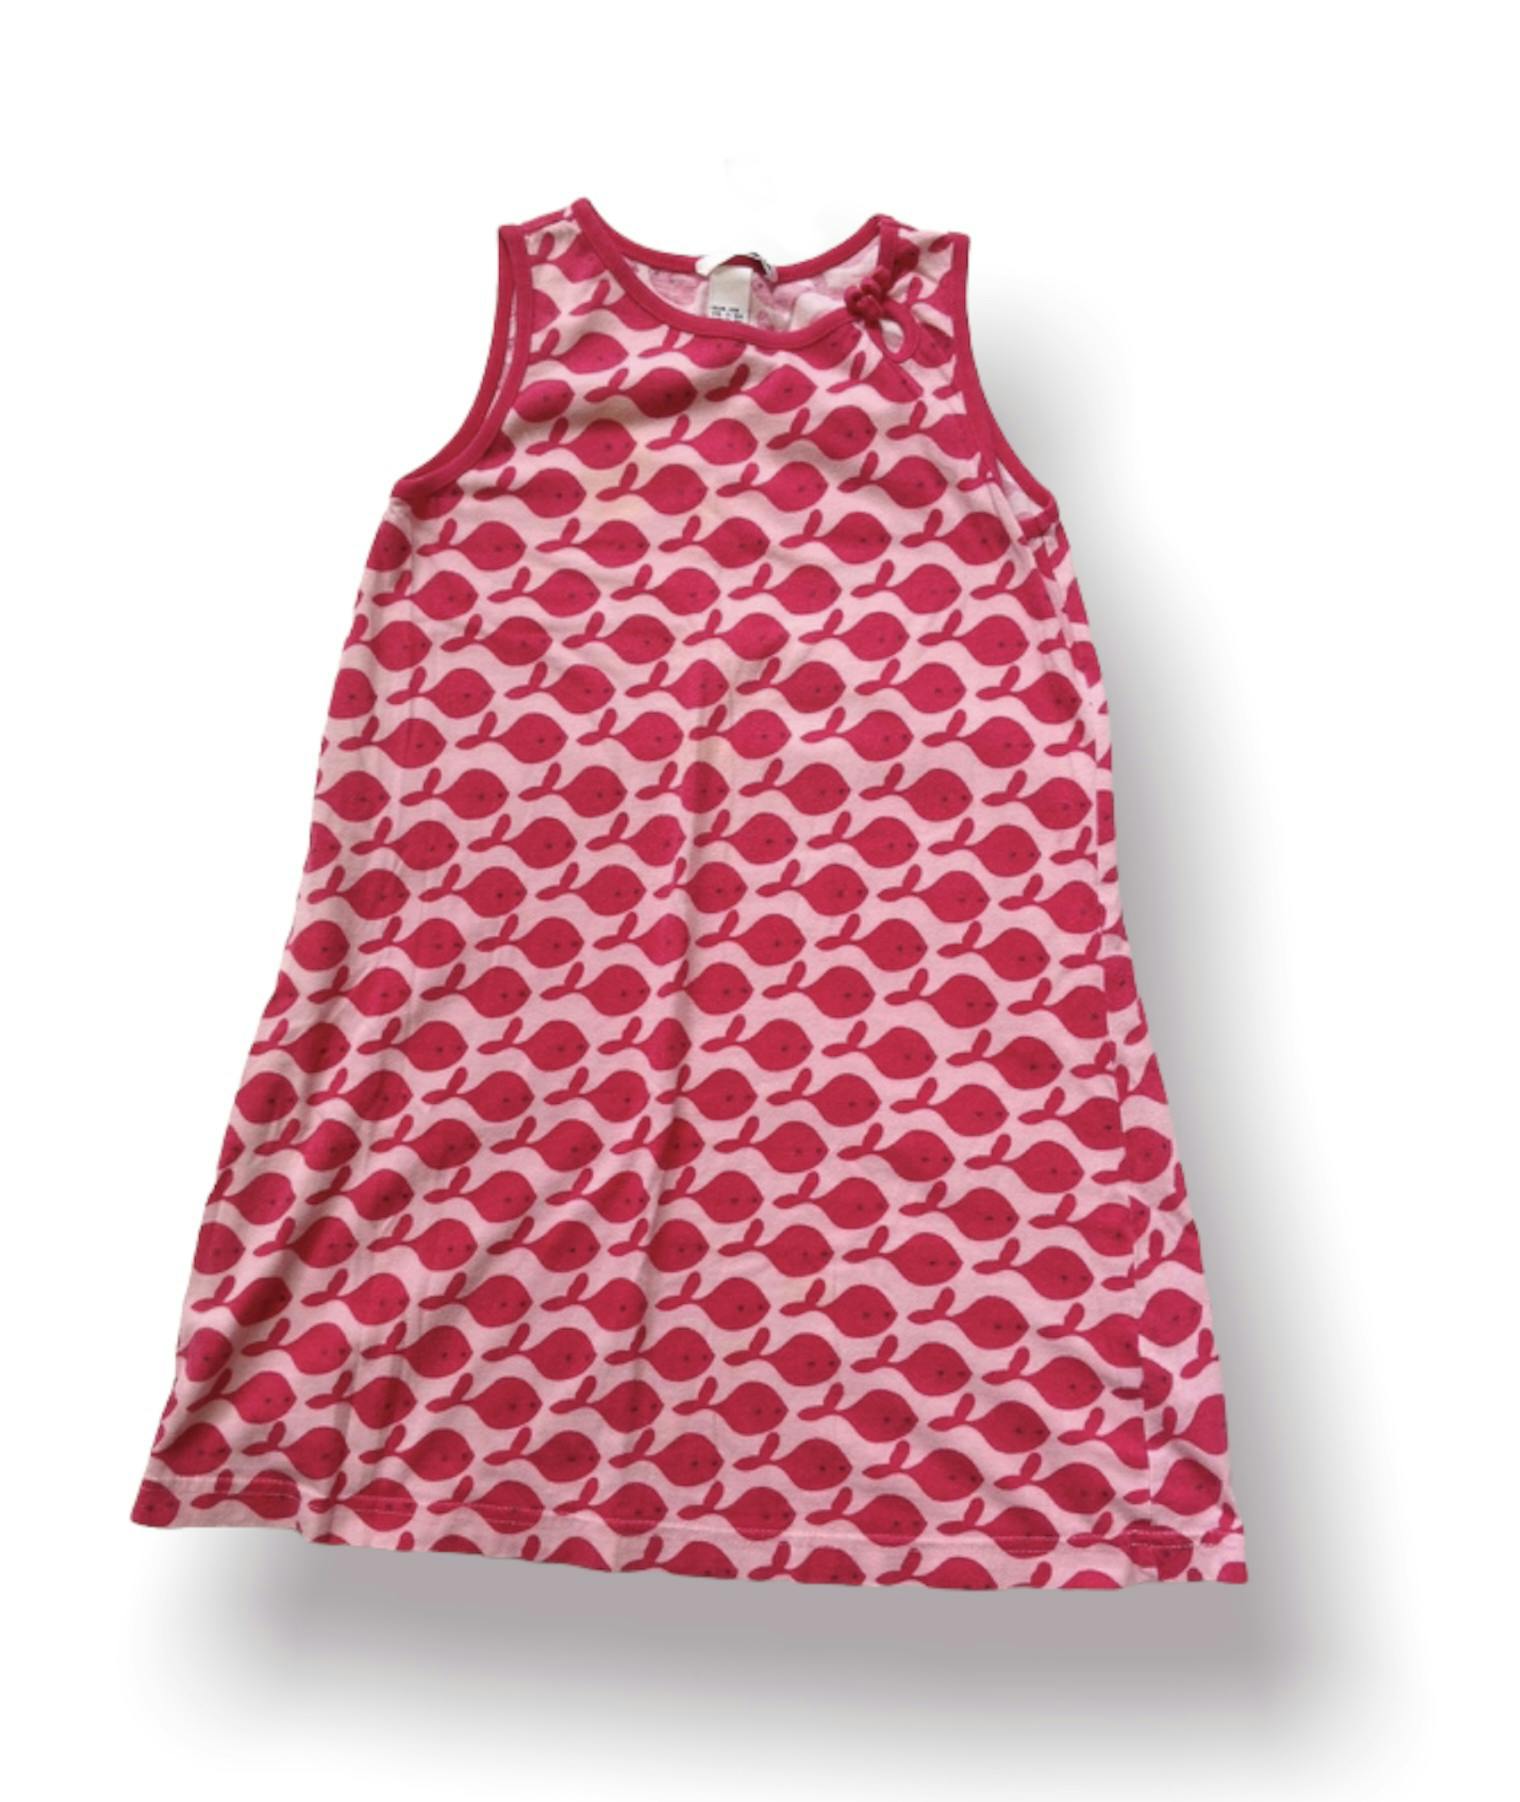 Rosa klänning stl 128 - Lilla grodans ekobutik